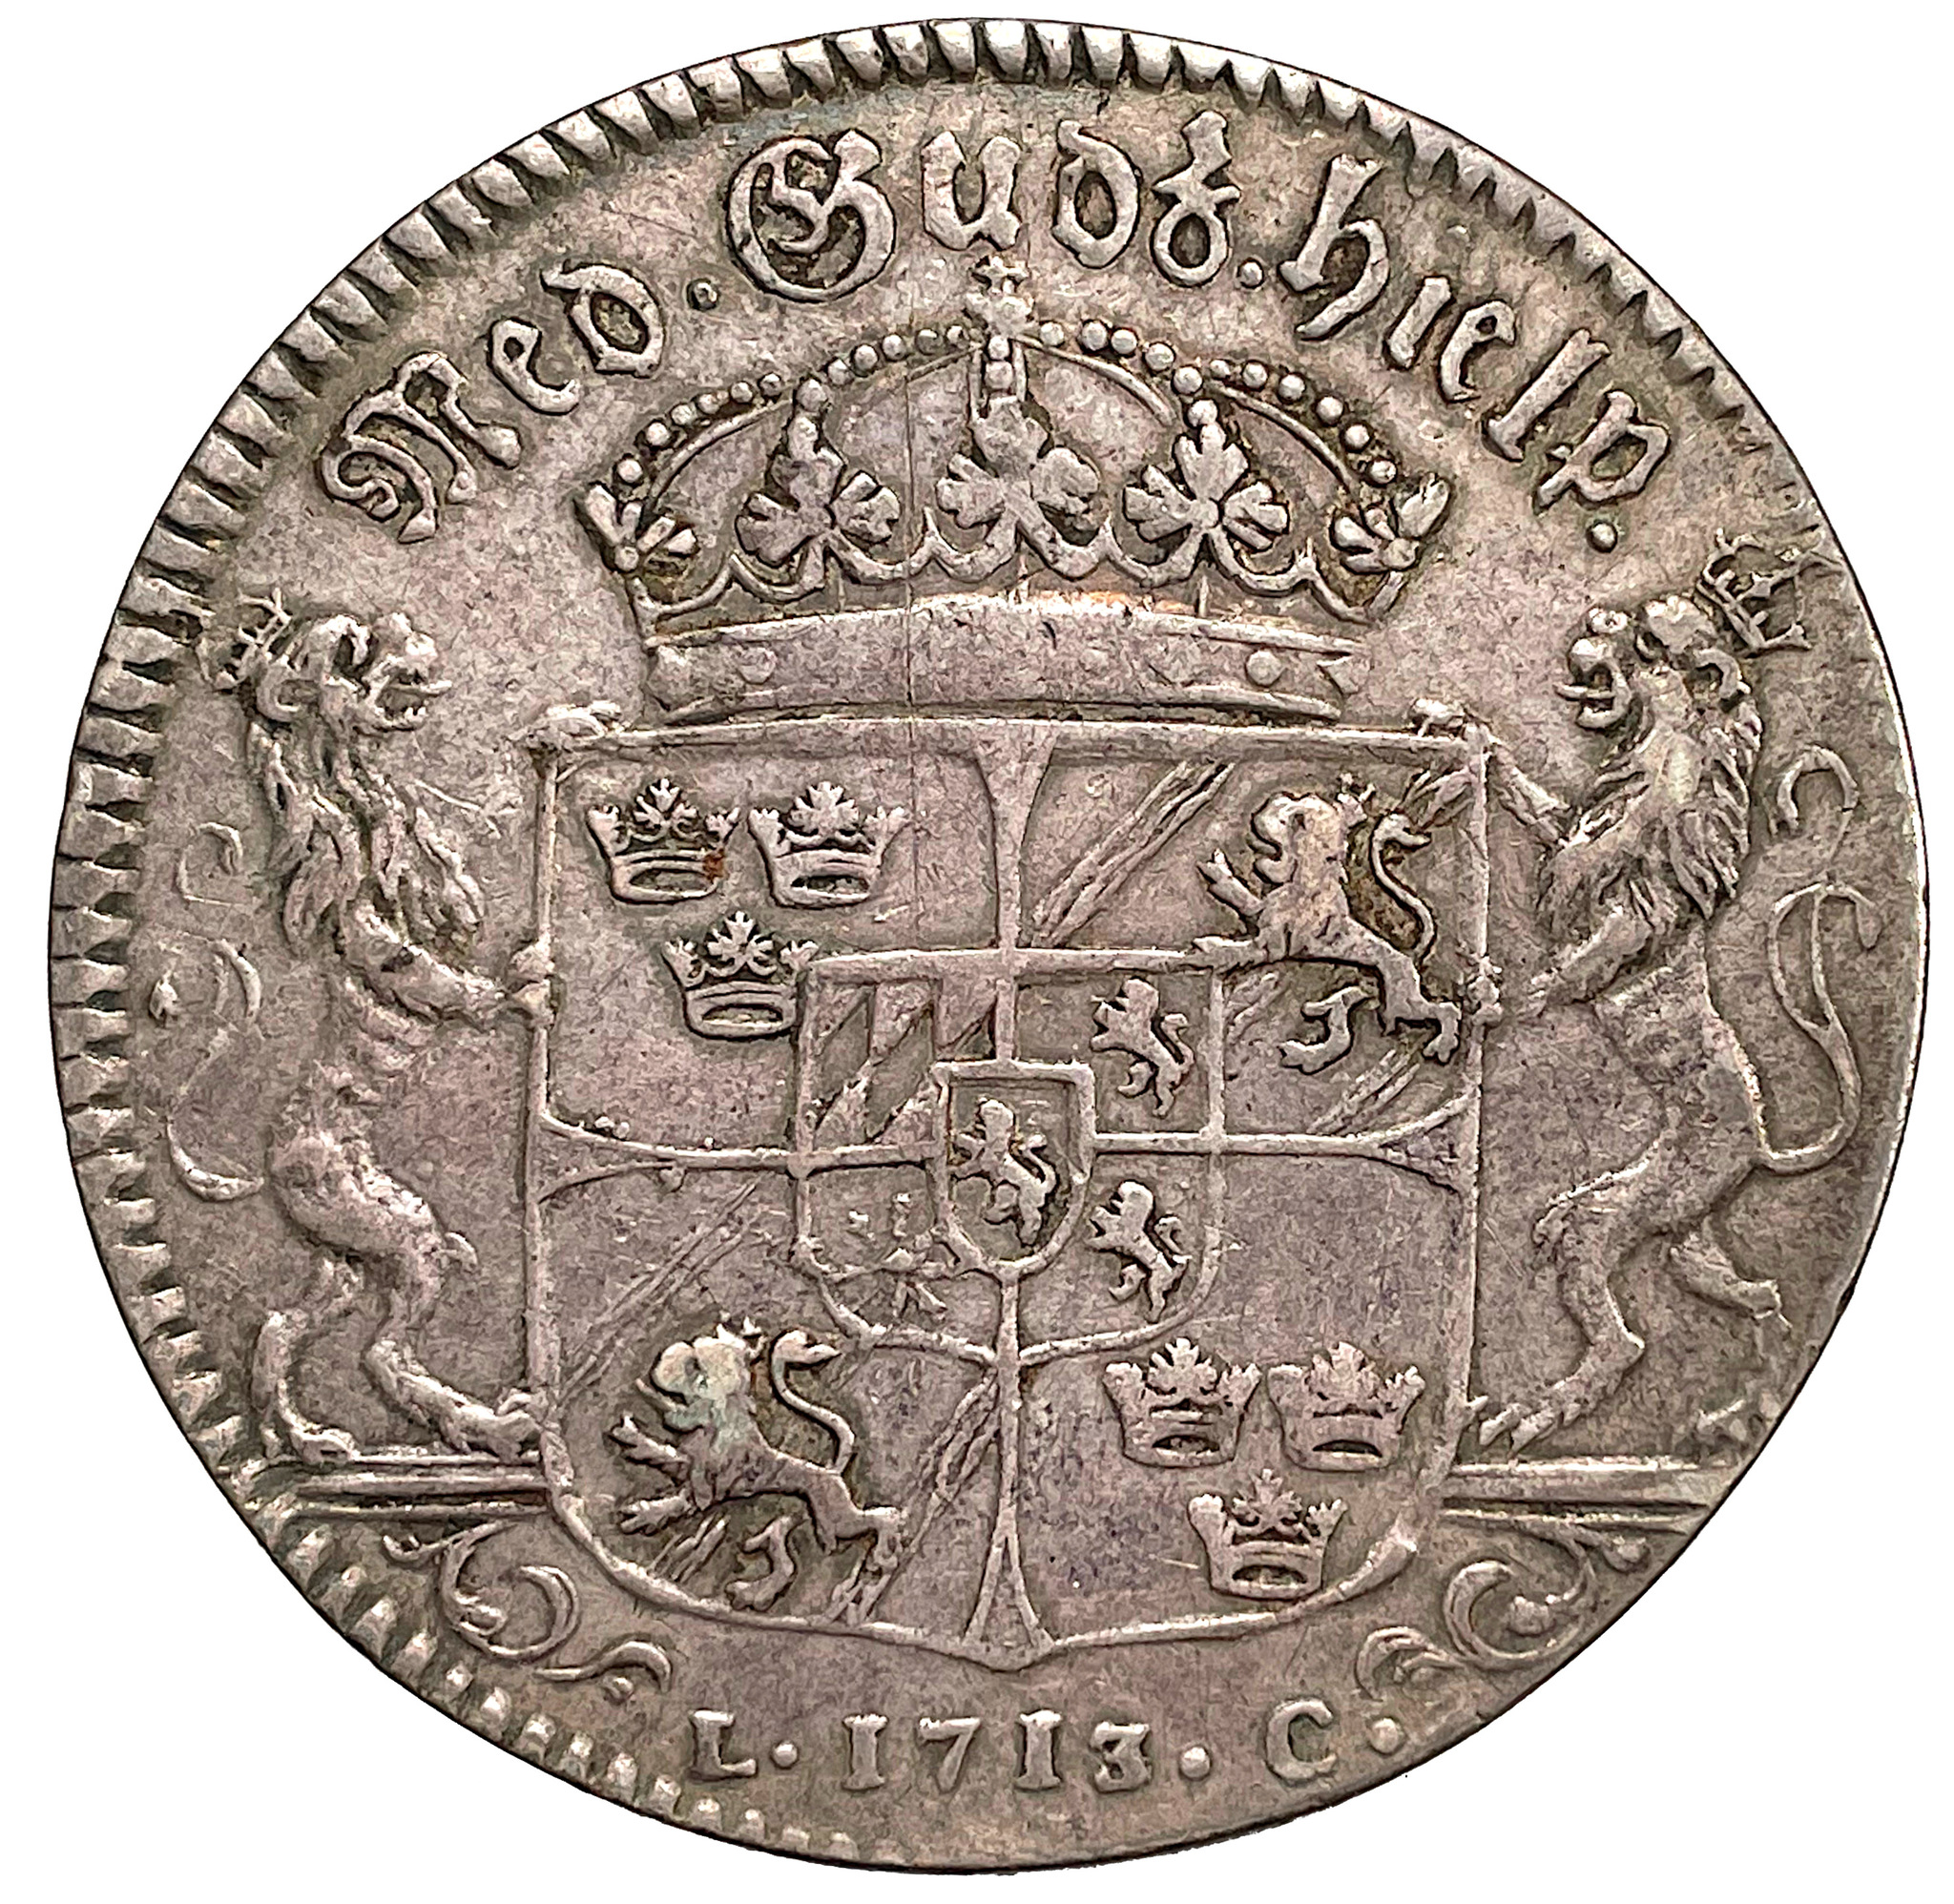 Karl XII, Riksdaler 1713 - Riksvapen med smal krona och smalare lejon